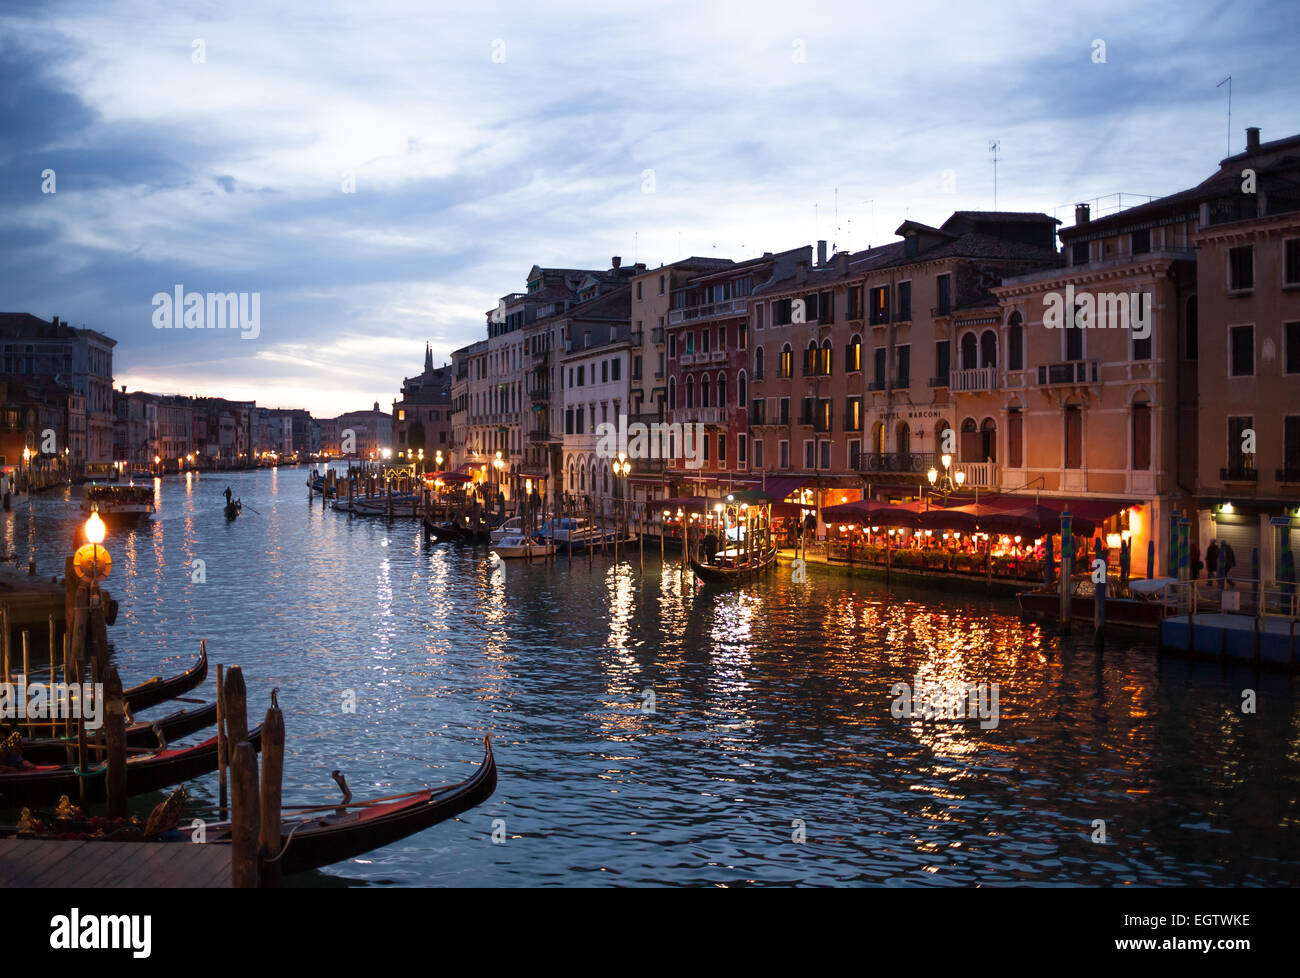 Vue de nuit sur Grand Canal du pont du Rialto à Venise en gondoles. Italie Banque D'Images